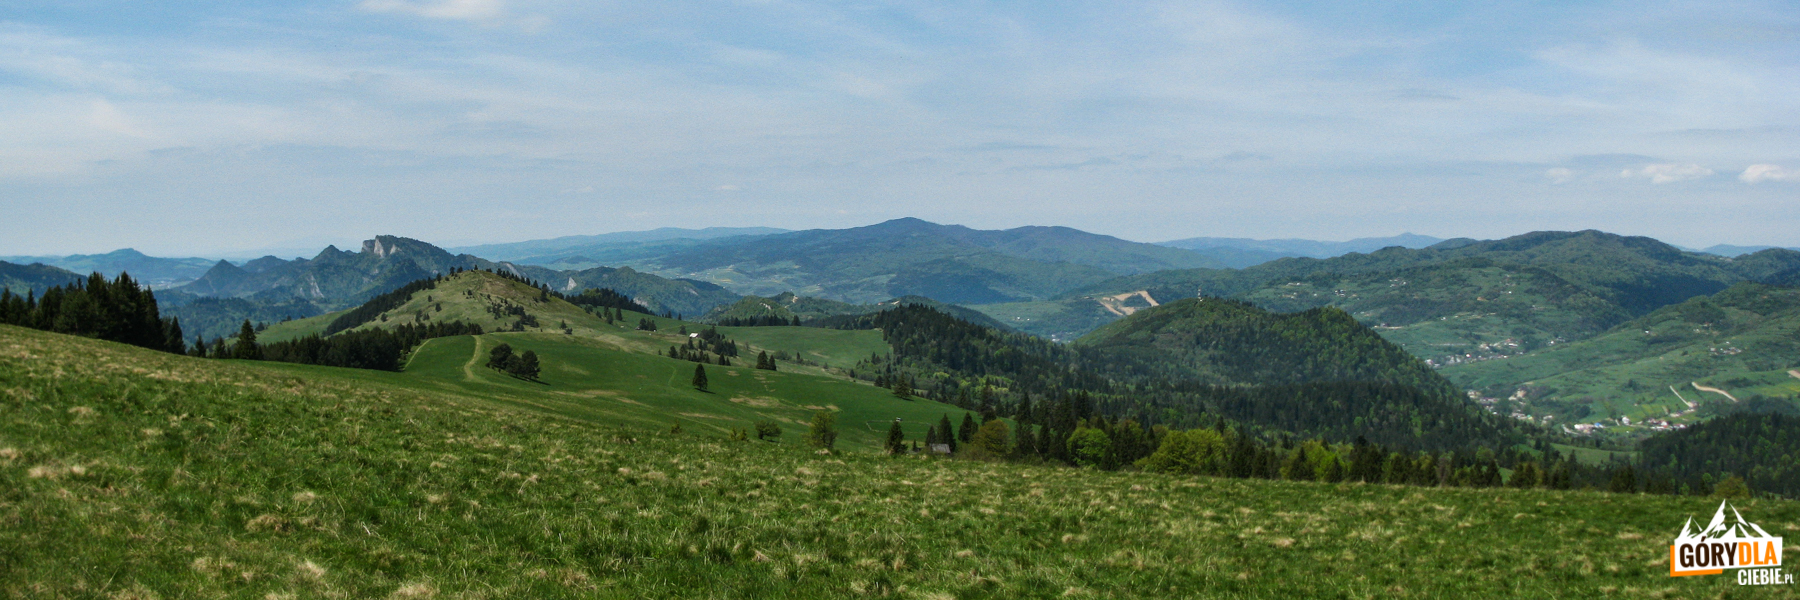 Widok z Durbaszki (934 m) - od lewej: Pieniny Właściwe (Trzy Korony), grań Małych Pienin (Wysoki Wierch), Gorce (Lubań), Beskid Wyspowy (Mogielica) i Pasmo Przehyby